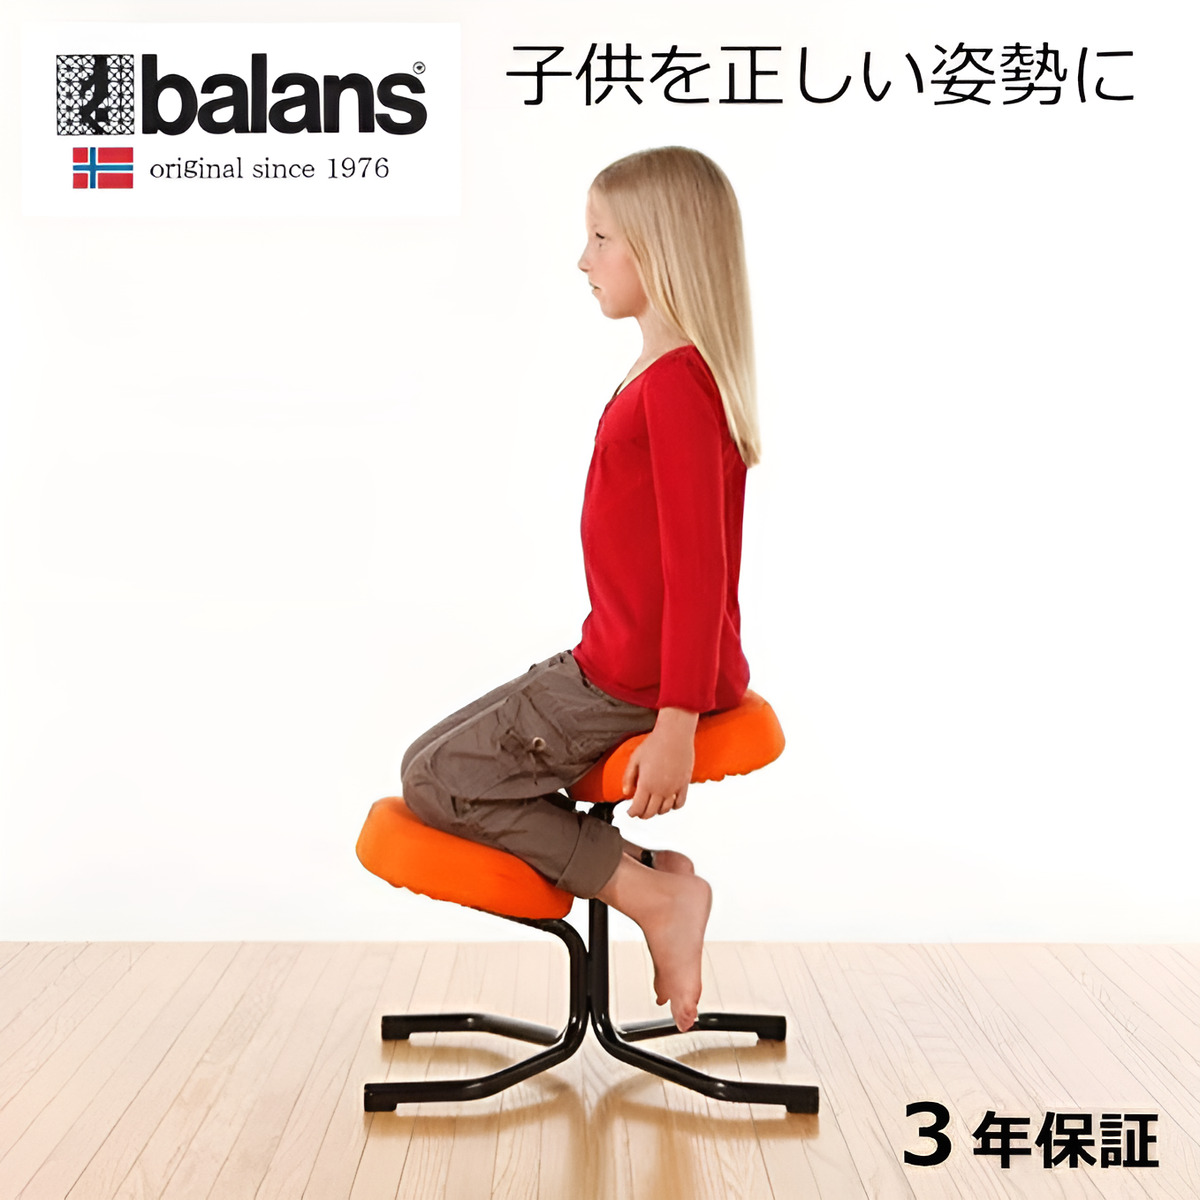 セットアップ Balance chair バランスチェア 姿勢矯正 学習椅子 姿勢が